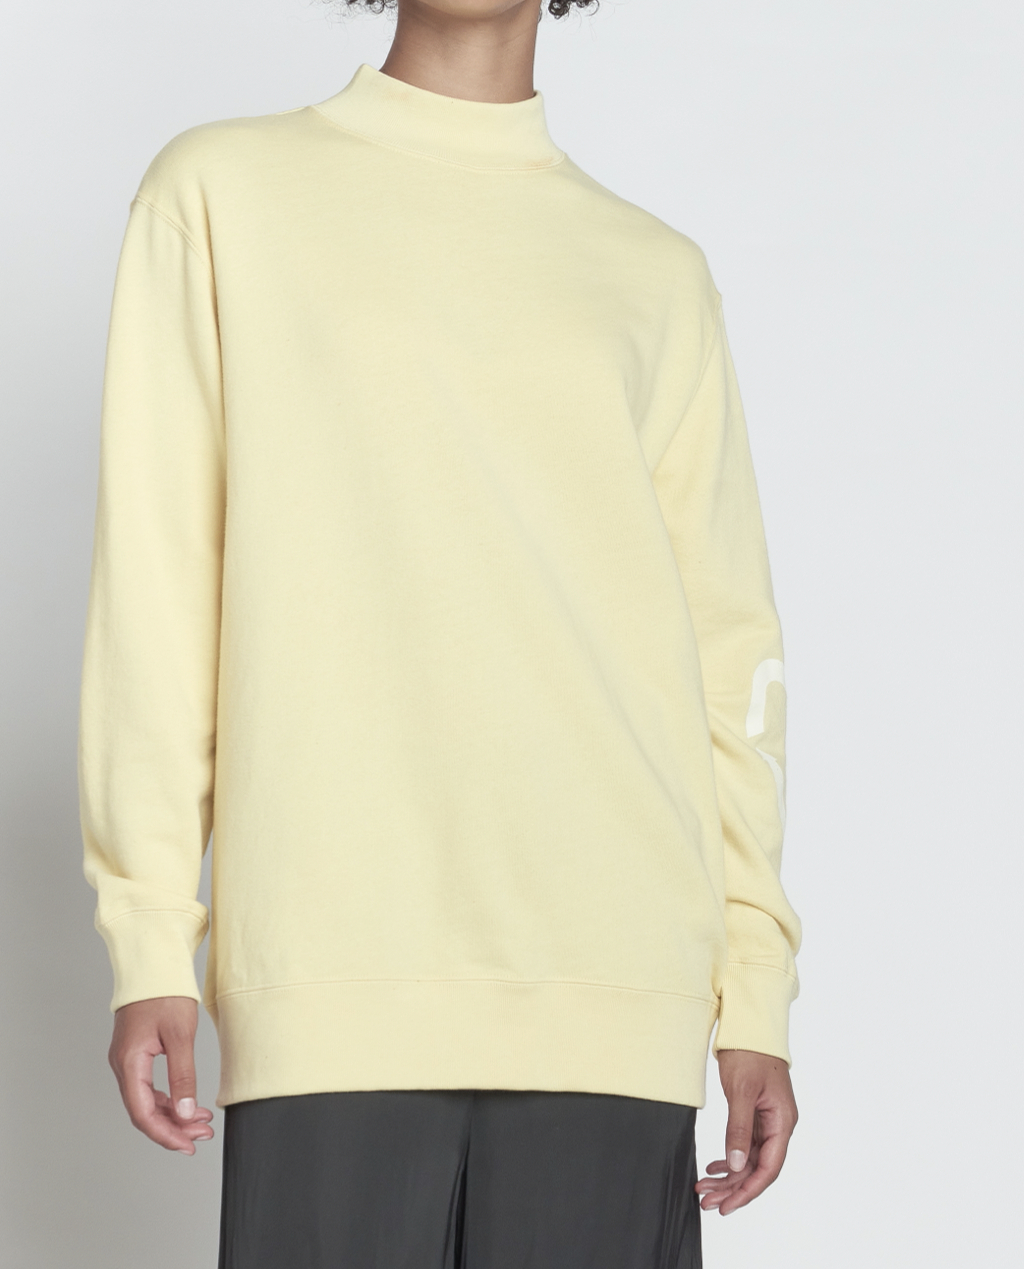 Harvee High-Neck Sweatshirt